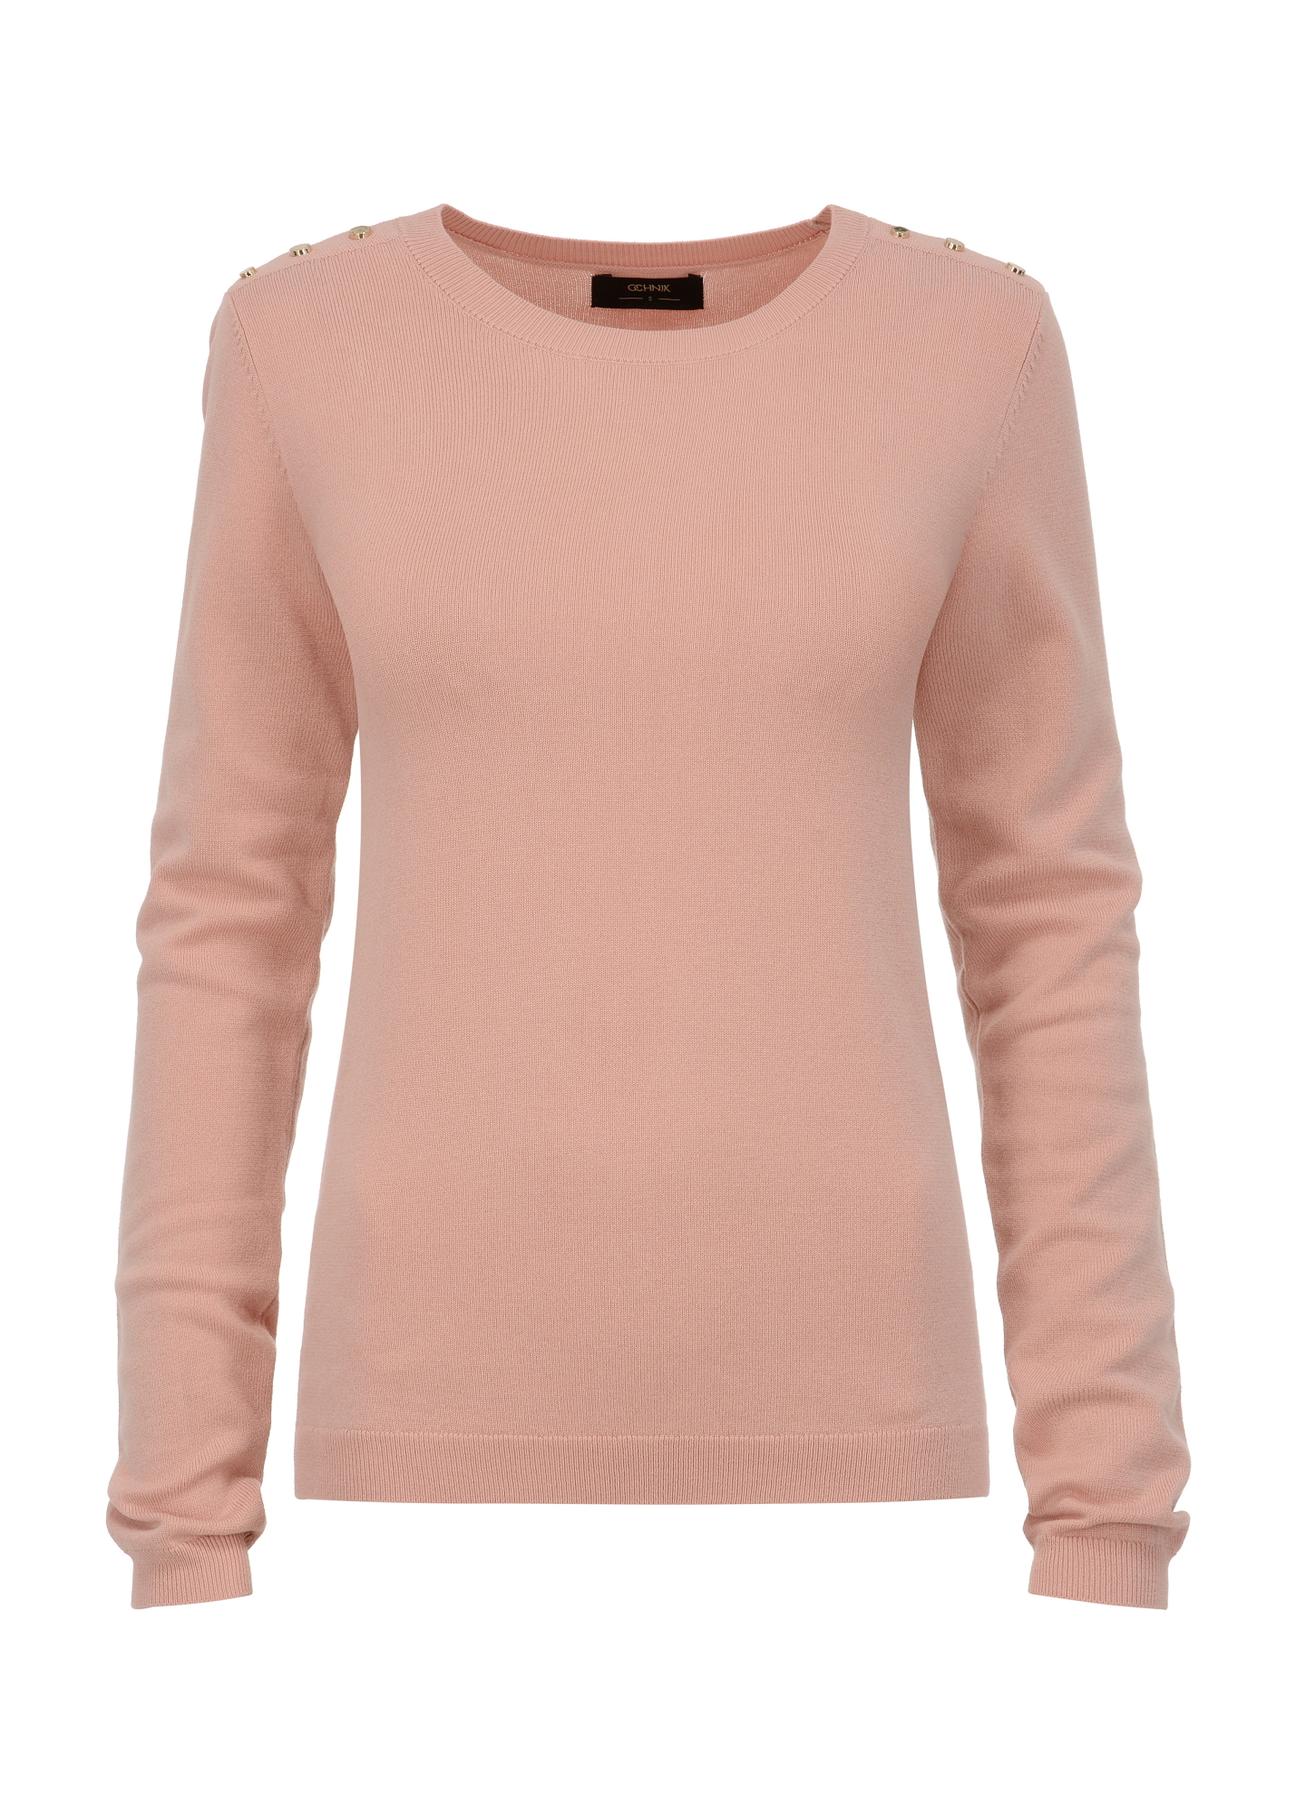 Różowa bluzka damska z dżetami LSLDT-0039-34(W23)